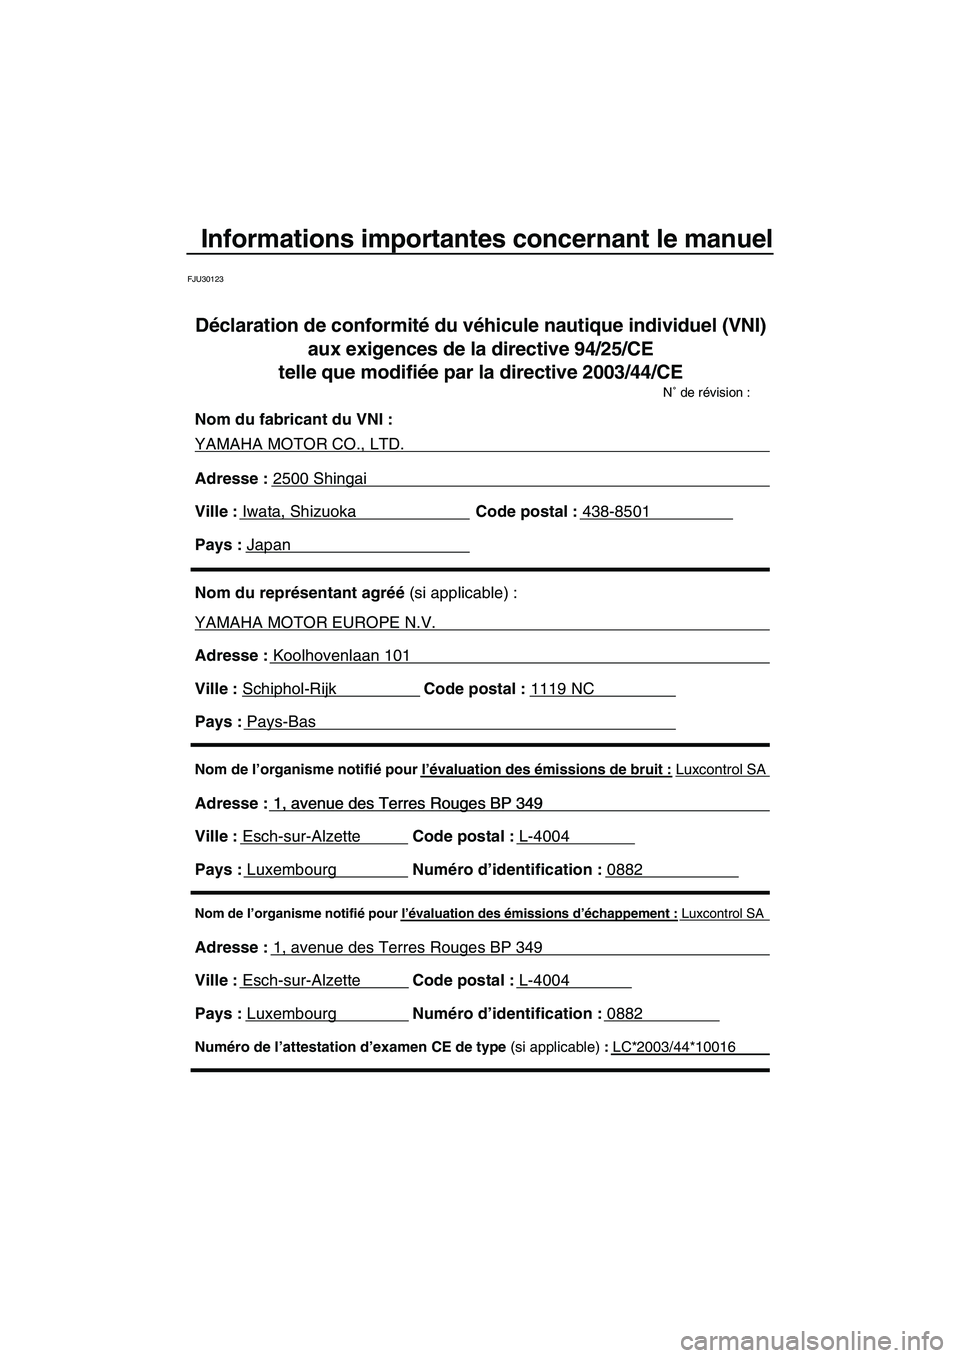 YAMAHA VX SPORT 2009  Notices Demploi (in French) Informations importantes concernant le manuel
FJU30123
Nom de l’organisme notifié pour l’évaluation des émissions d’échappement : Luxcontrol SA
Adresse : 1, avenue des Terres Rouges BP 349 
